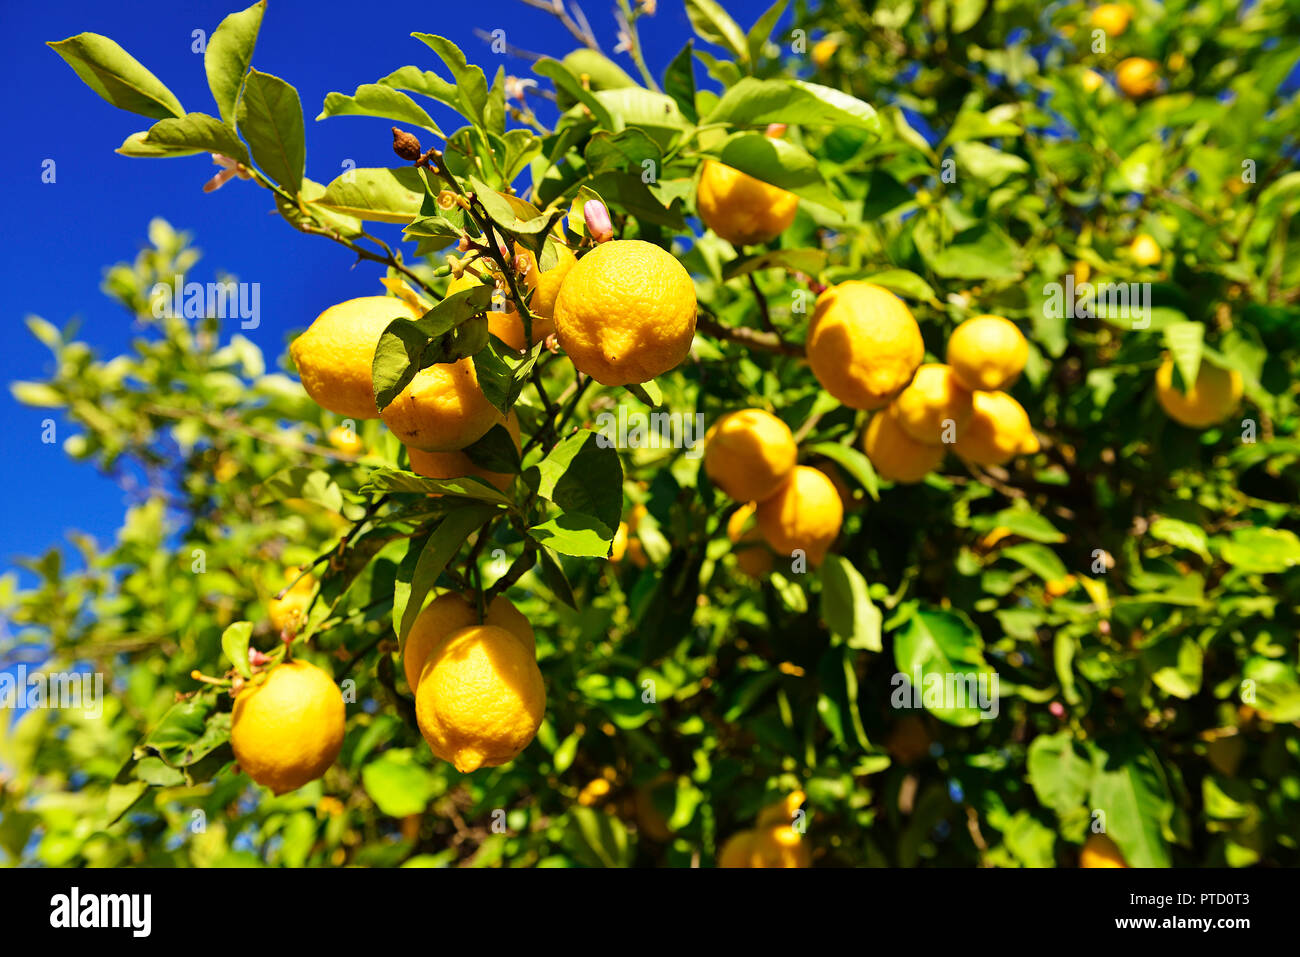 Albero di limone (Citrus × limon) con maturi i limoni, nei pressi di Mirtos, Creta, Grecia Foto Stock